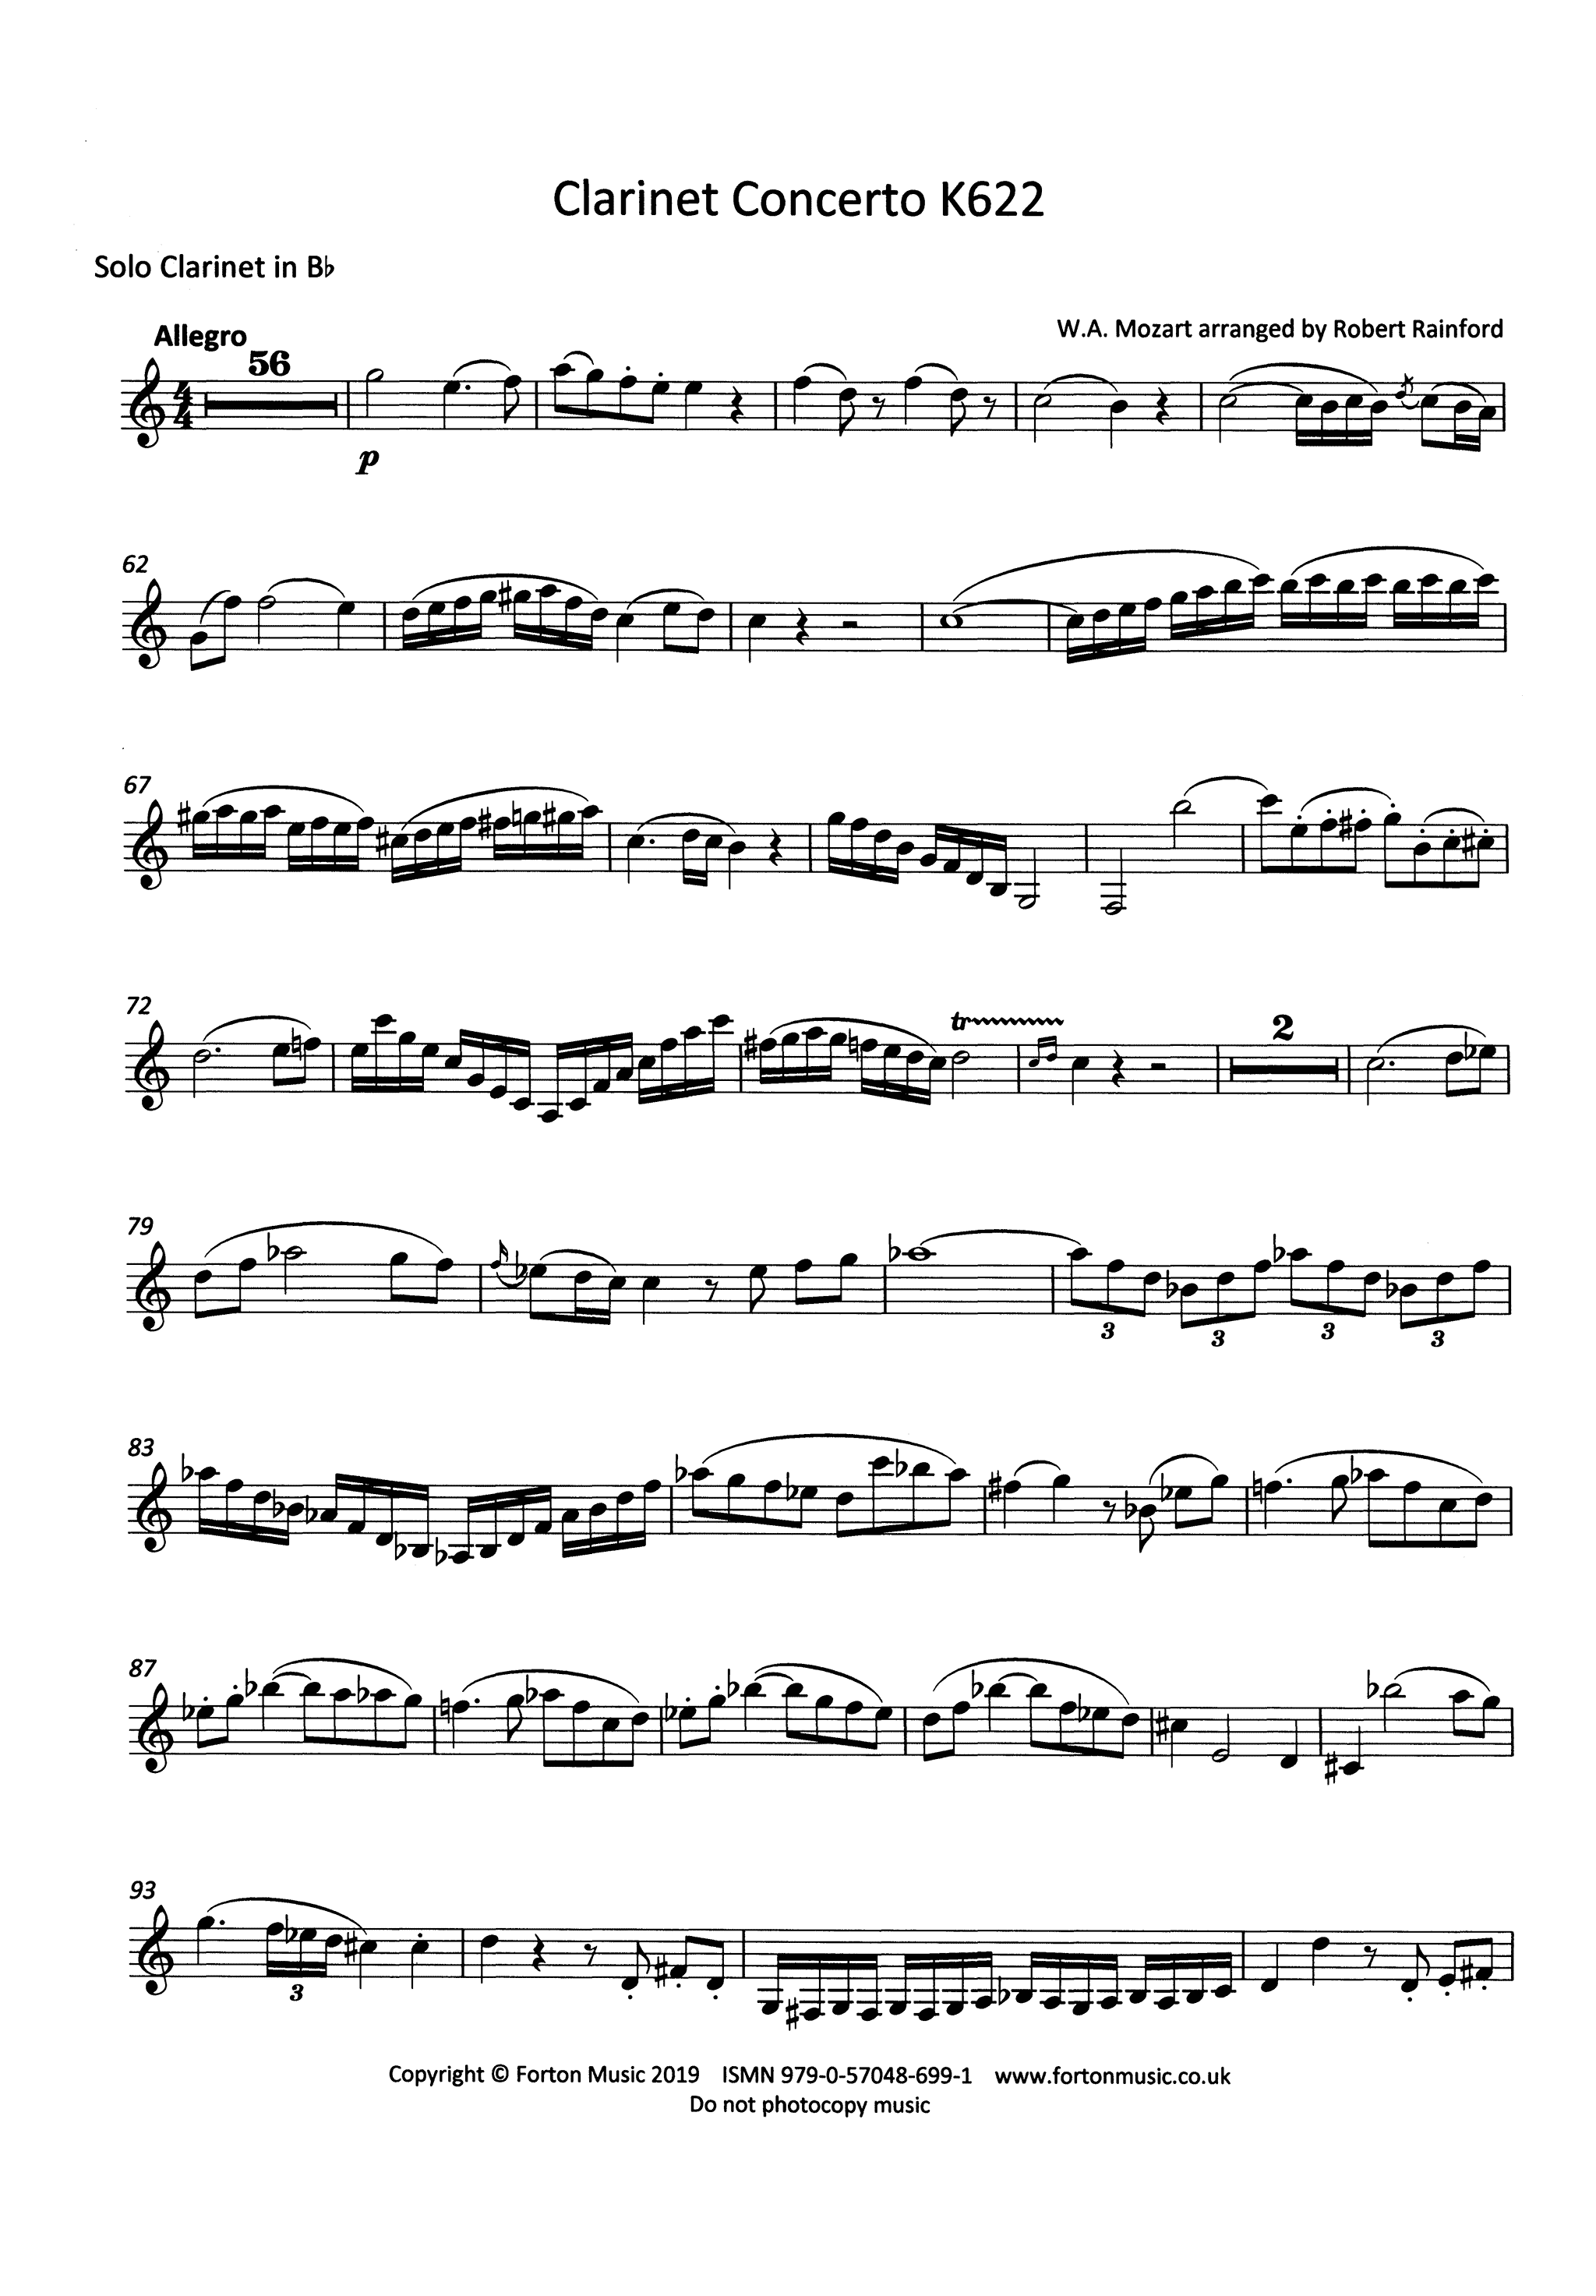 Clarinet Concerto in A Major, K. 622 Solo clarinet part